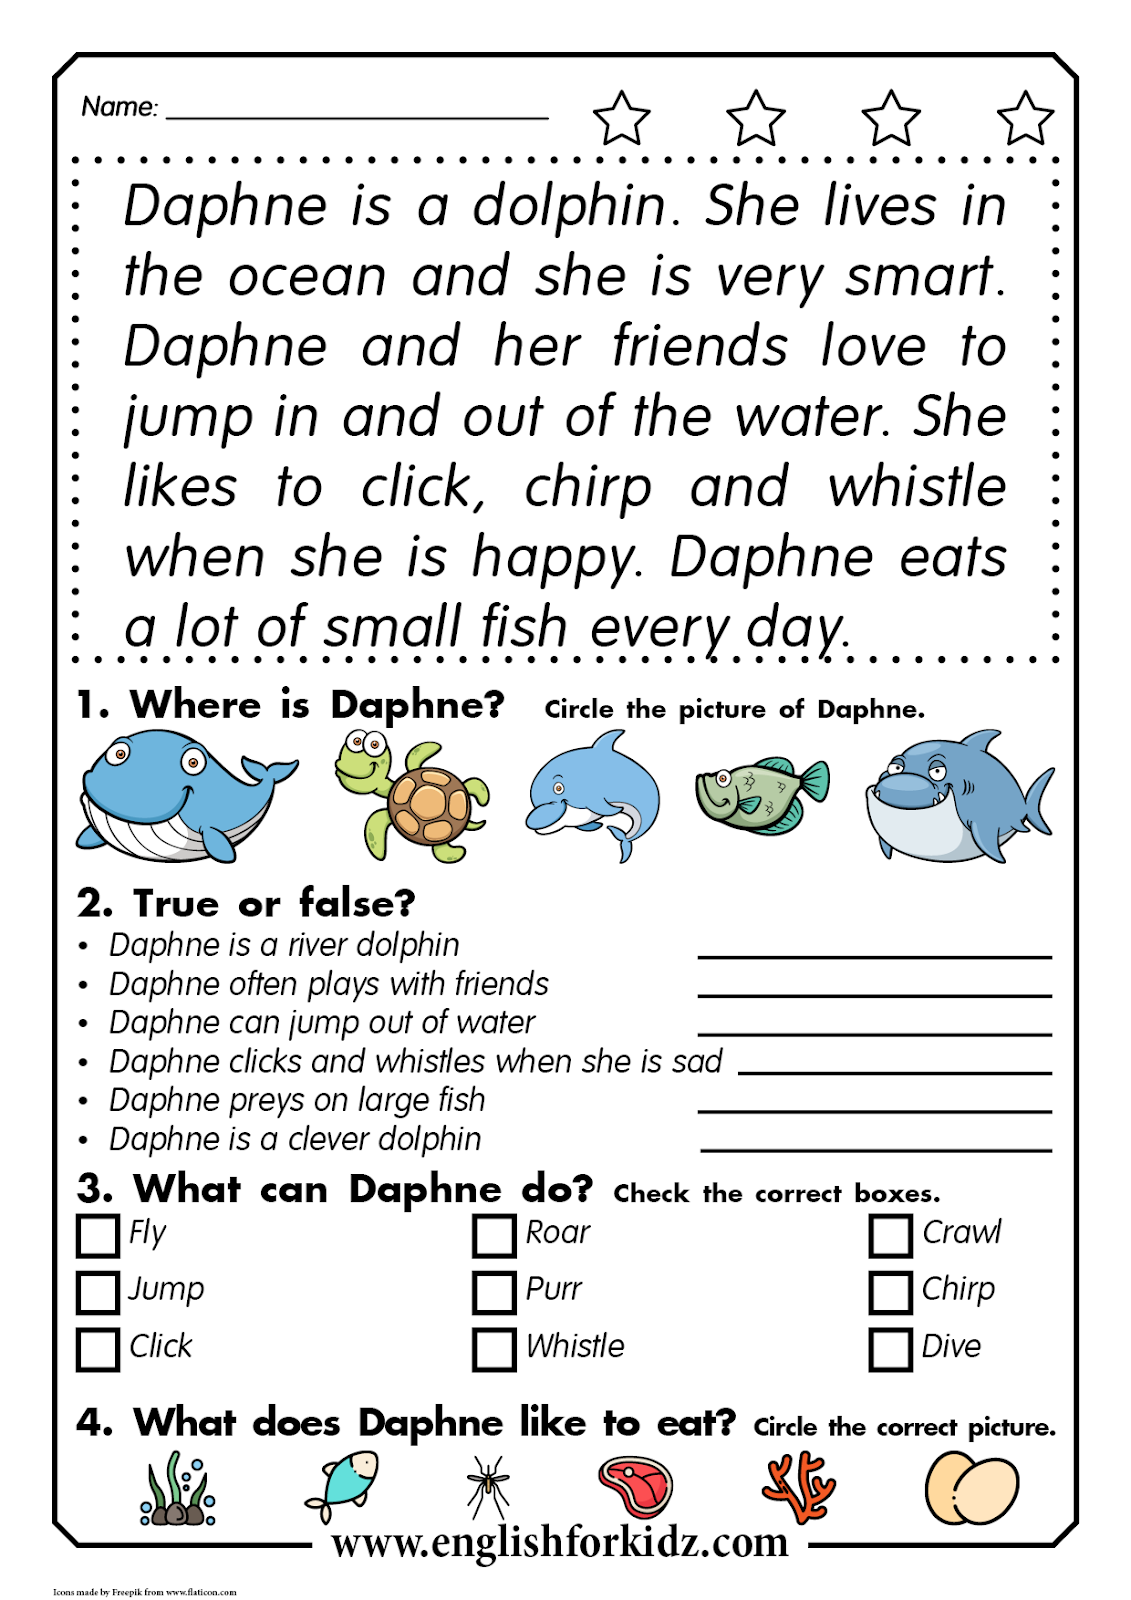 Reading Comprehension Worksheet For Kindergarten